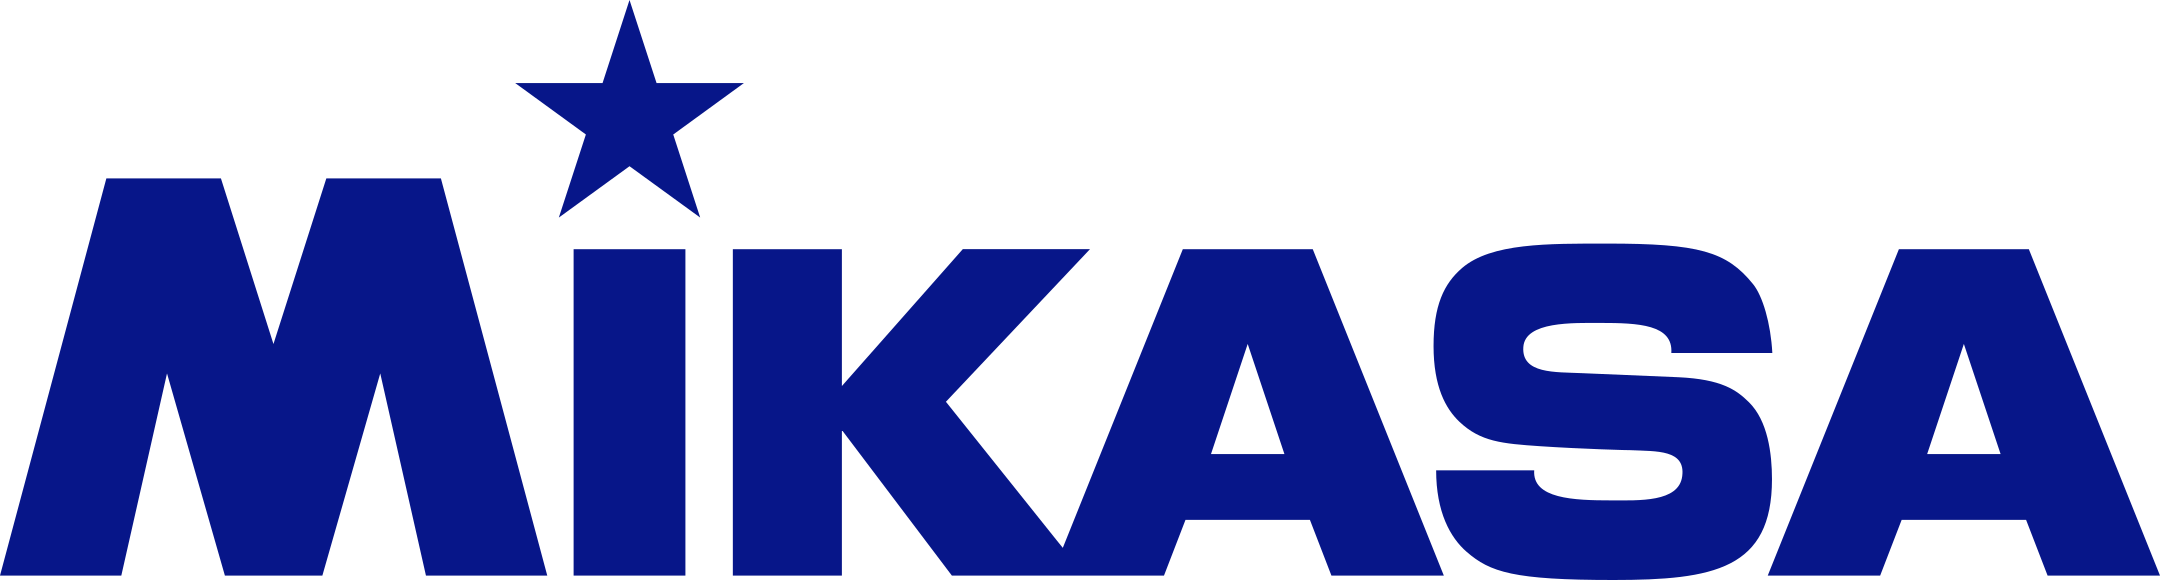 mikasa logo 1 - Mikasa Logo